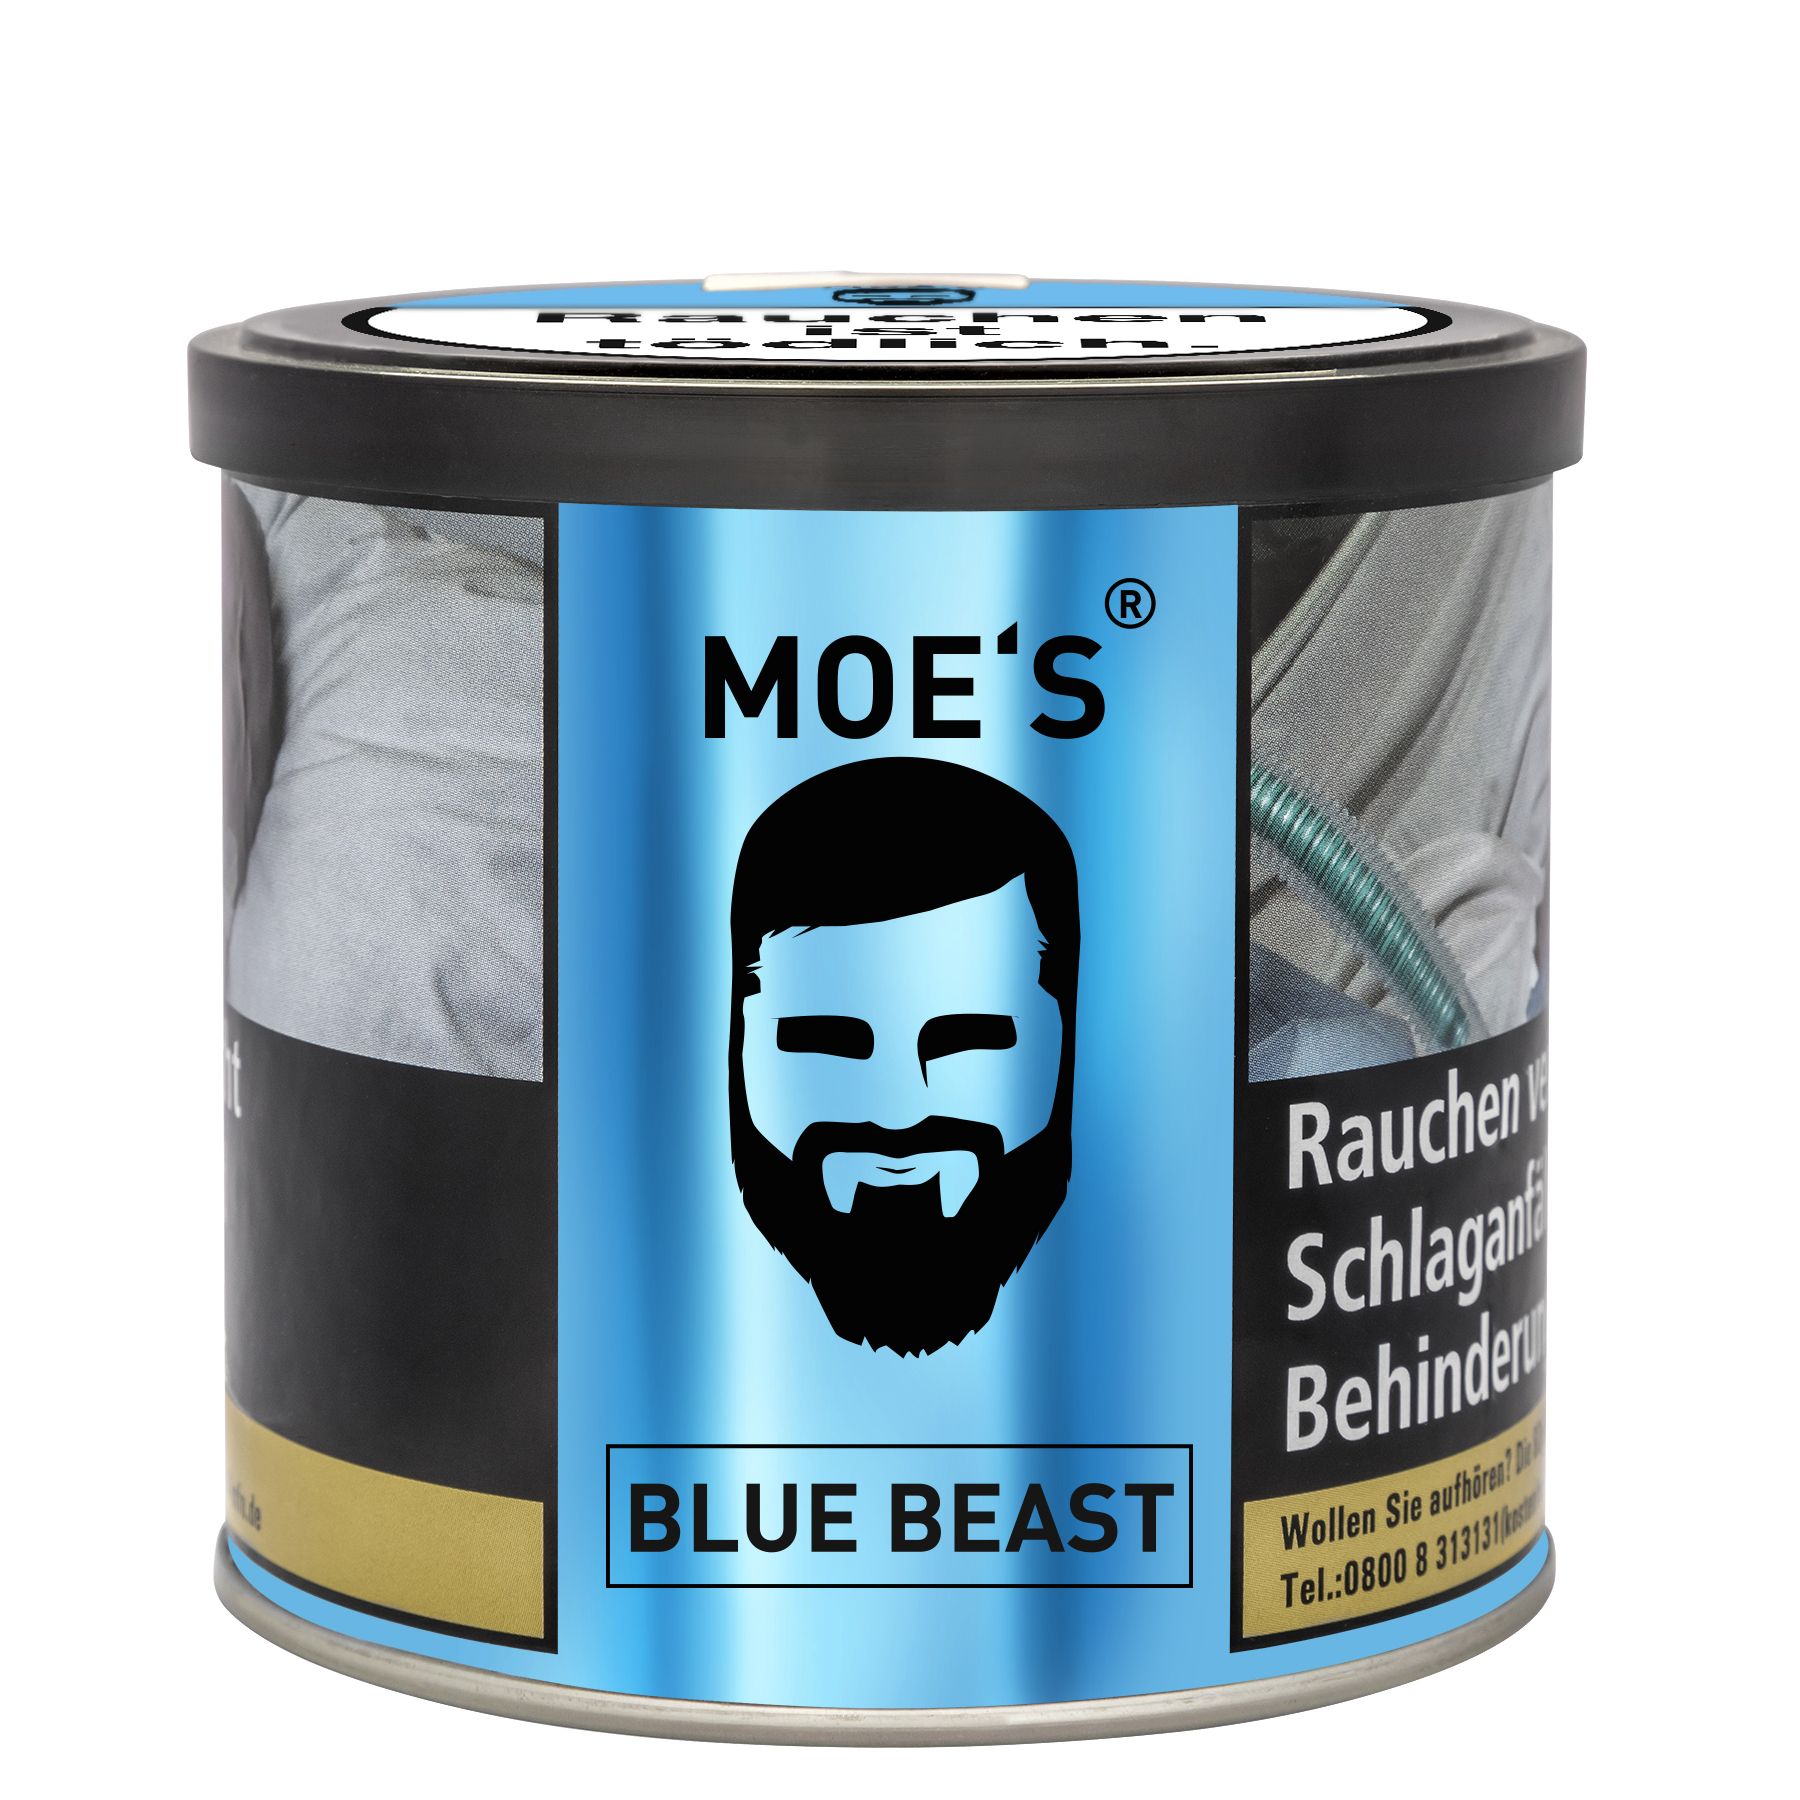 Moes Tobacco - Blue Beast